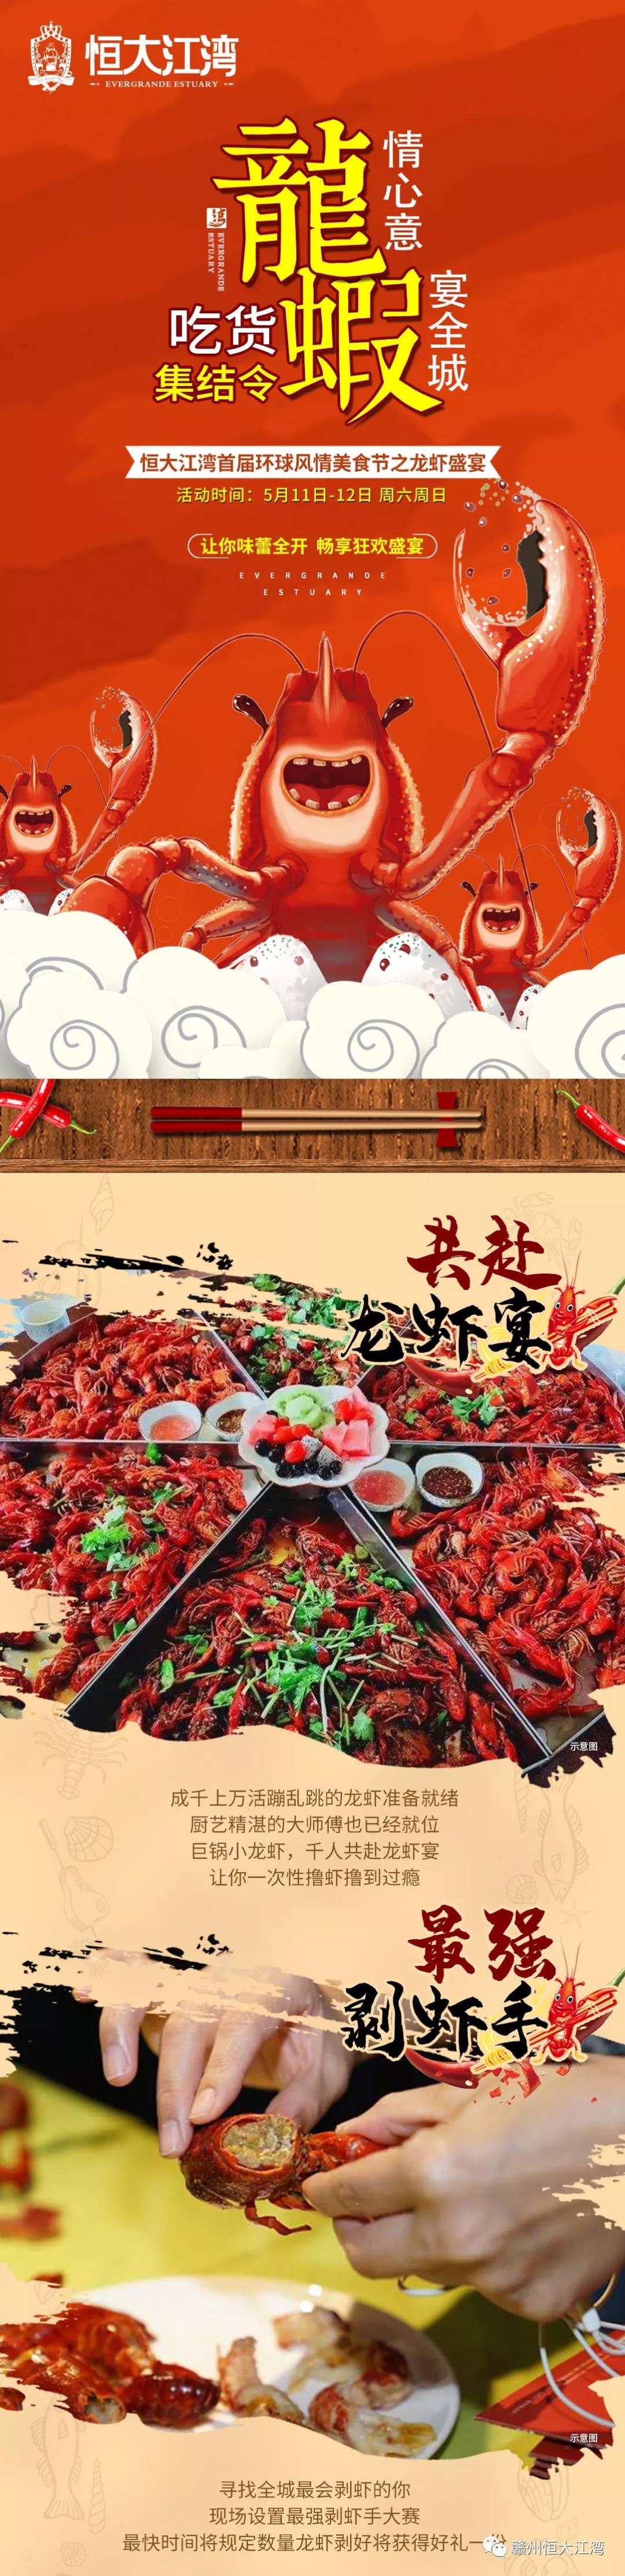 赣州恒大江湾环球美食 龙虾盛宴热辣来袭-中国网地产